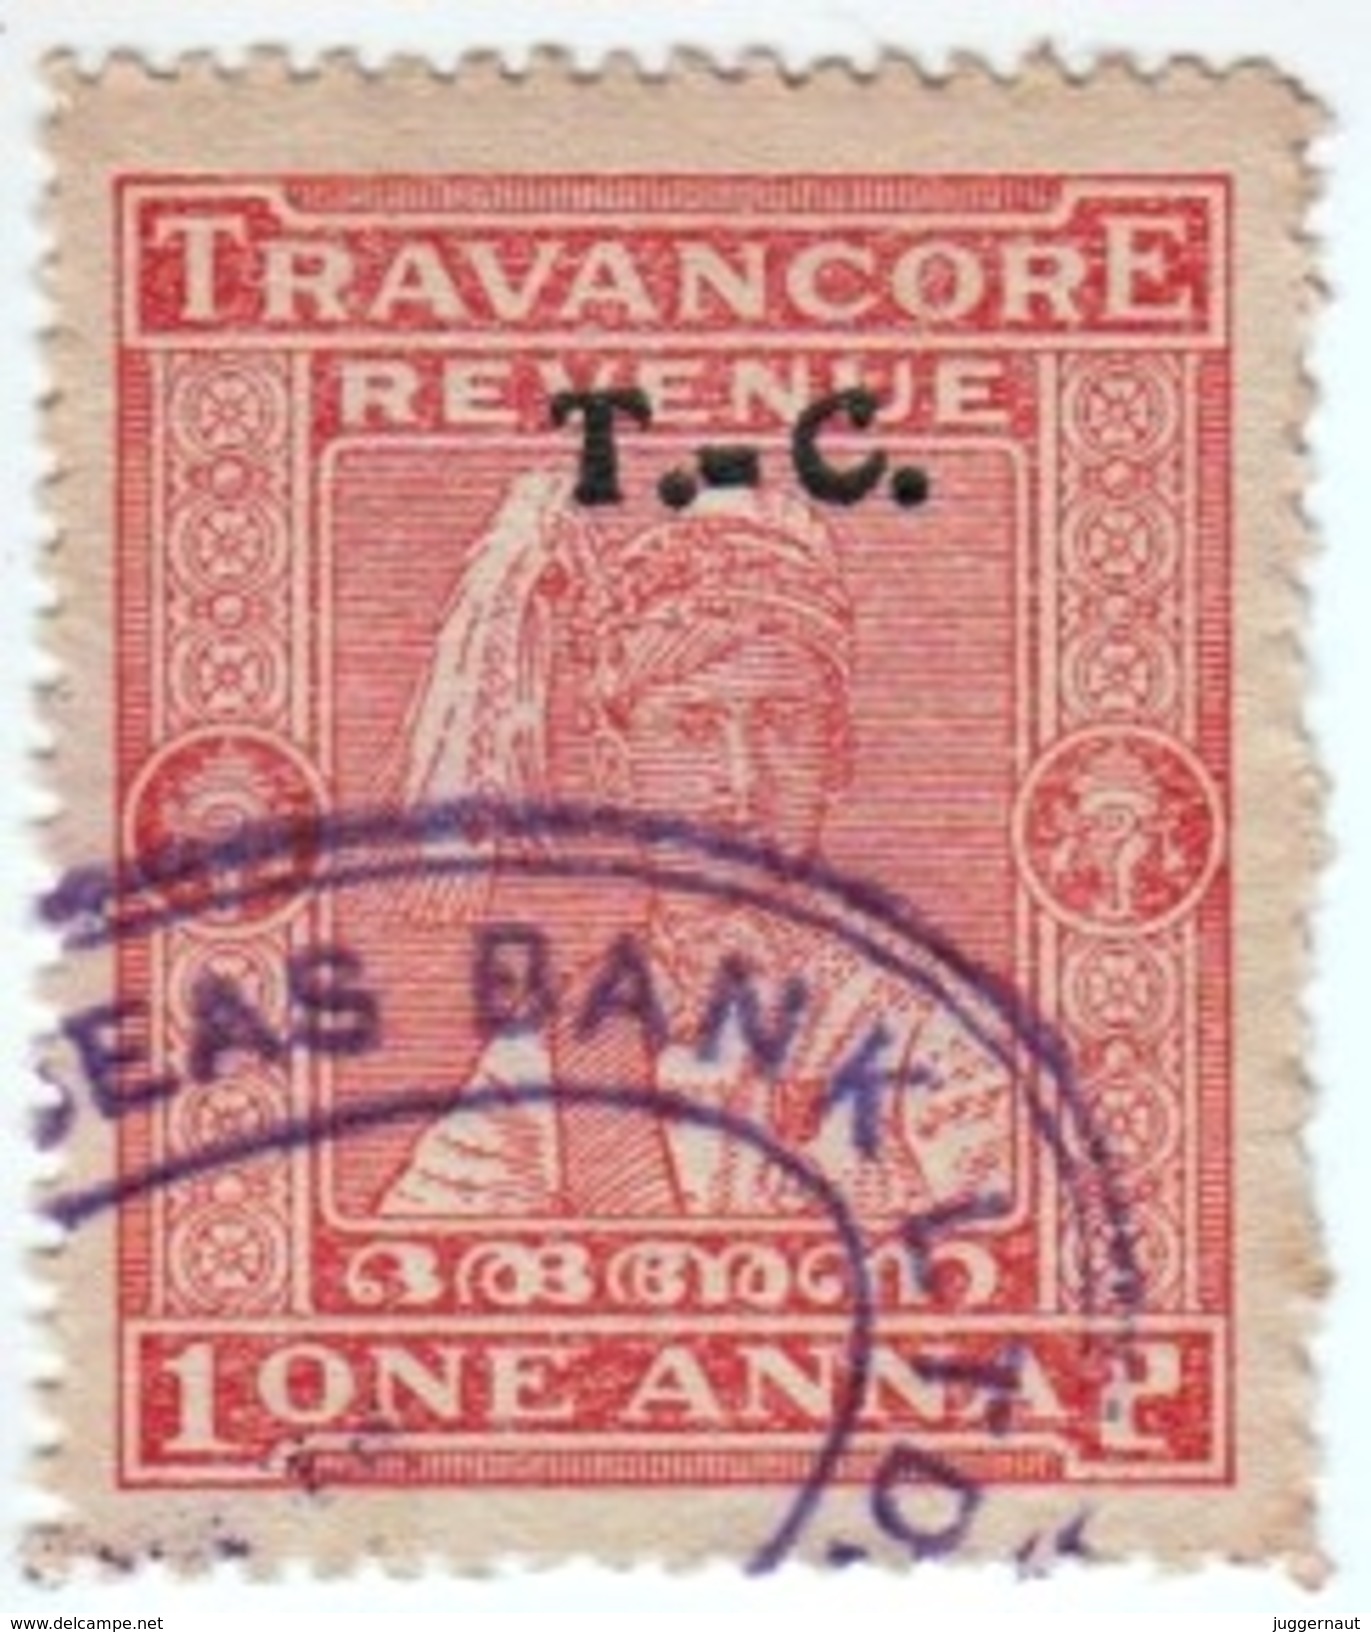 INDIA TRAVANCORE-COCHIN PRINCELY STATE 1-ANNA REVENUE STAMP 1931-1945 GOOD/USED - Travancore-Cochin